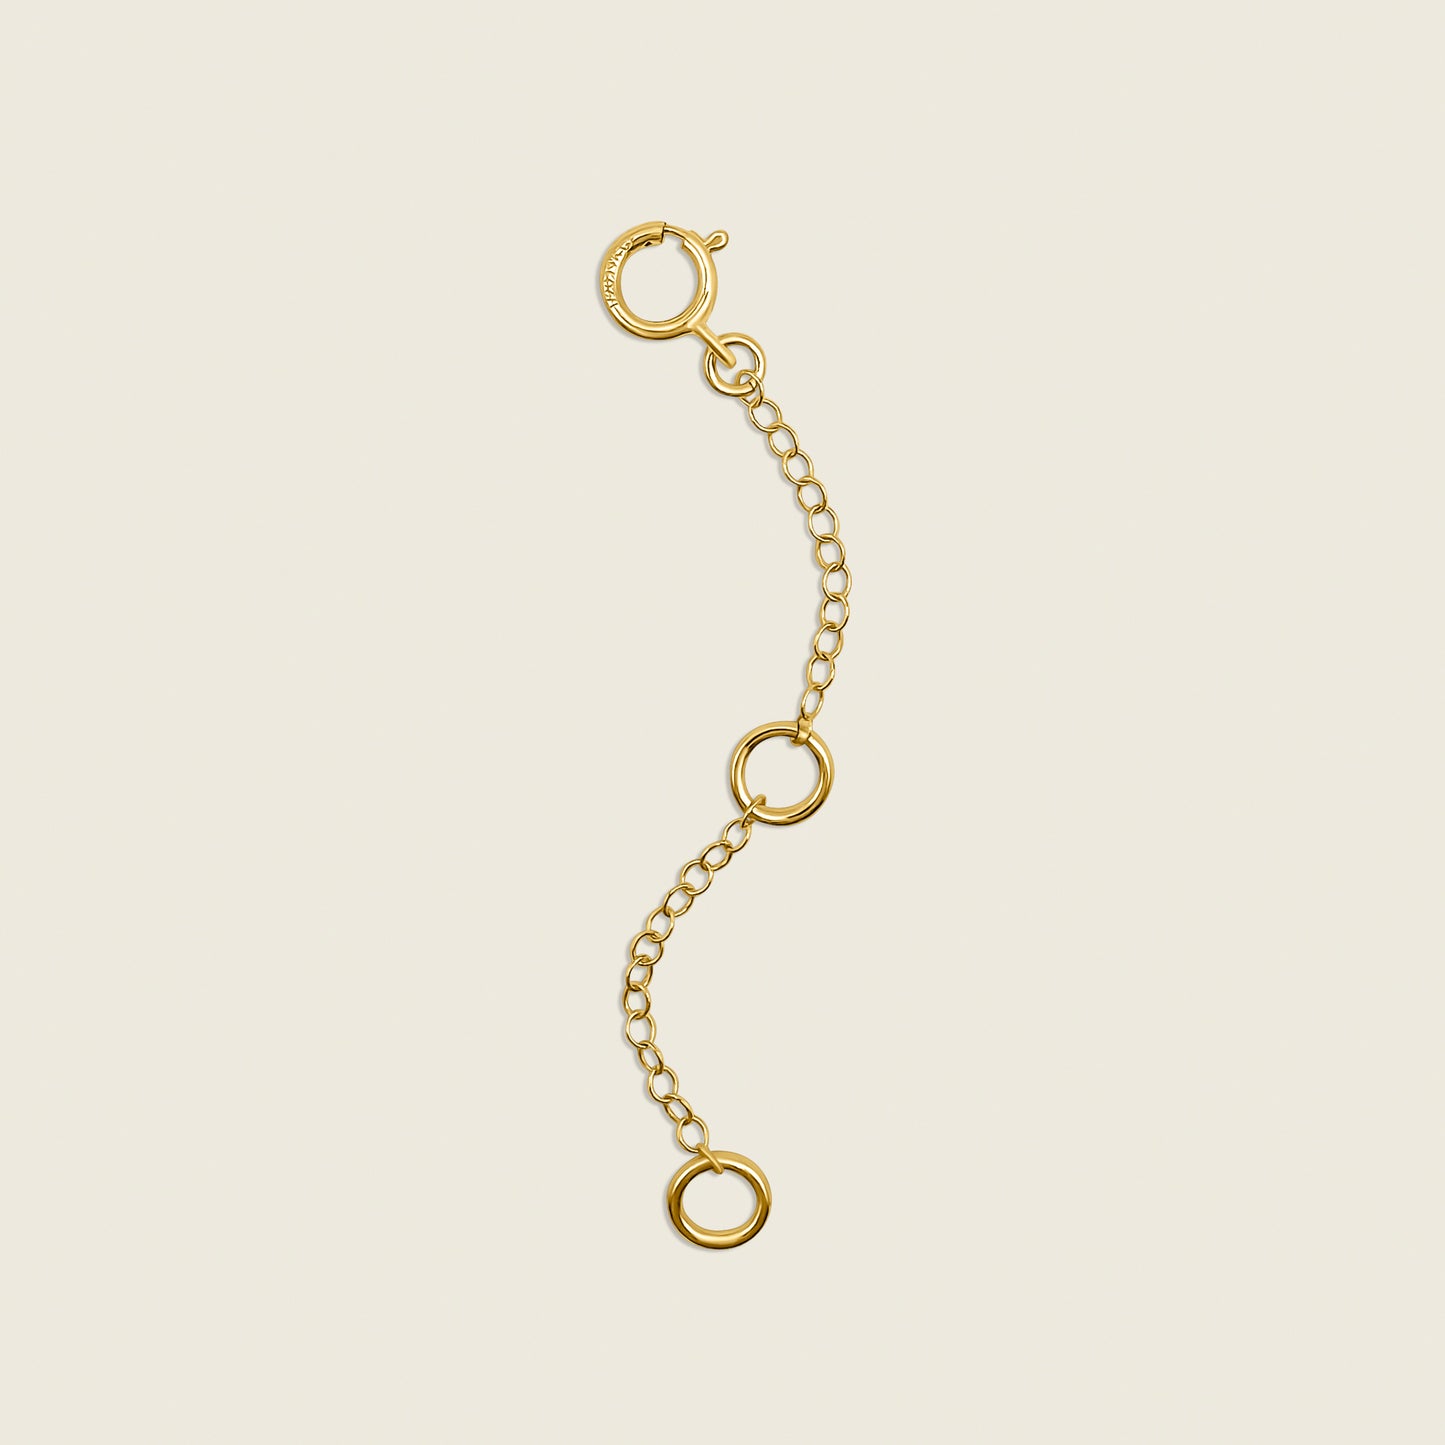 adjustable 2" necklace extender in 14k gold filled or sterling silver